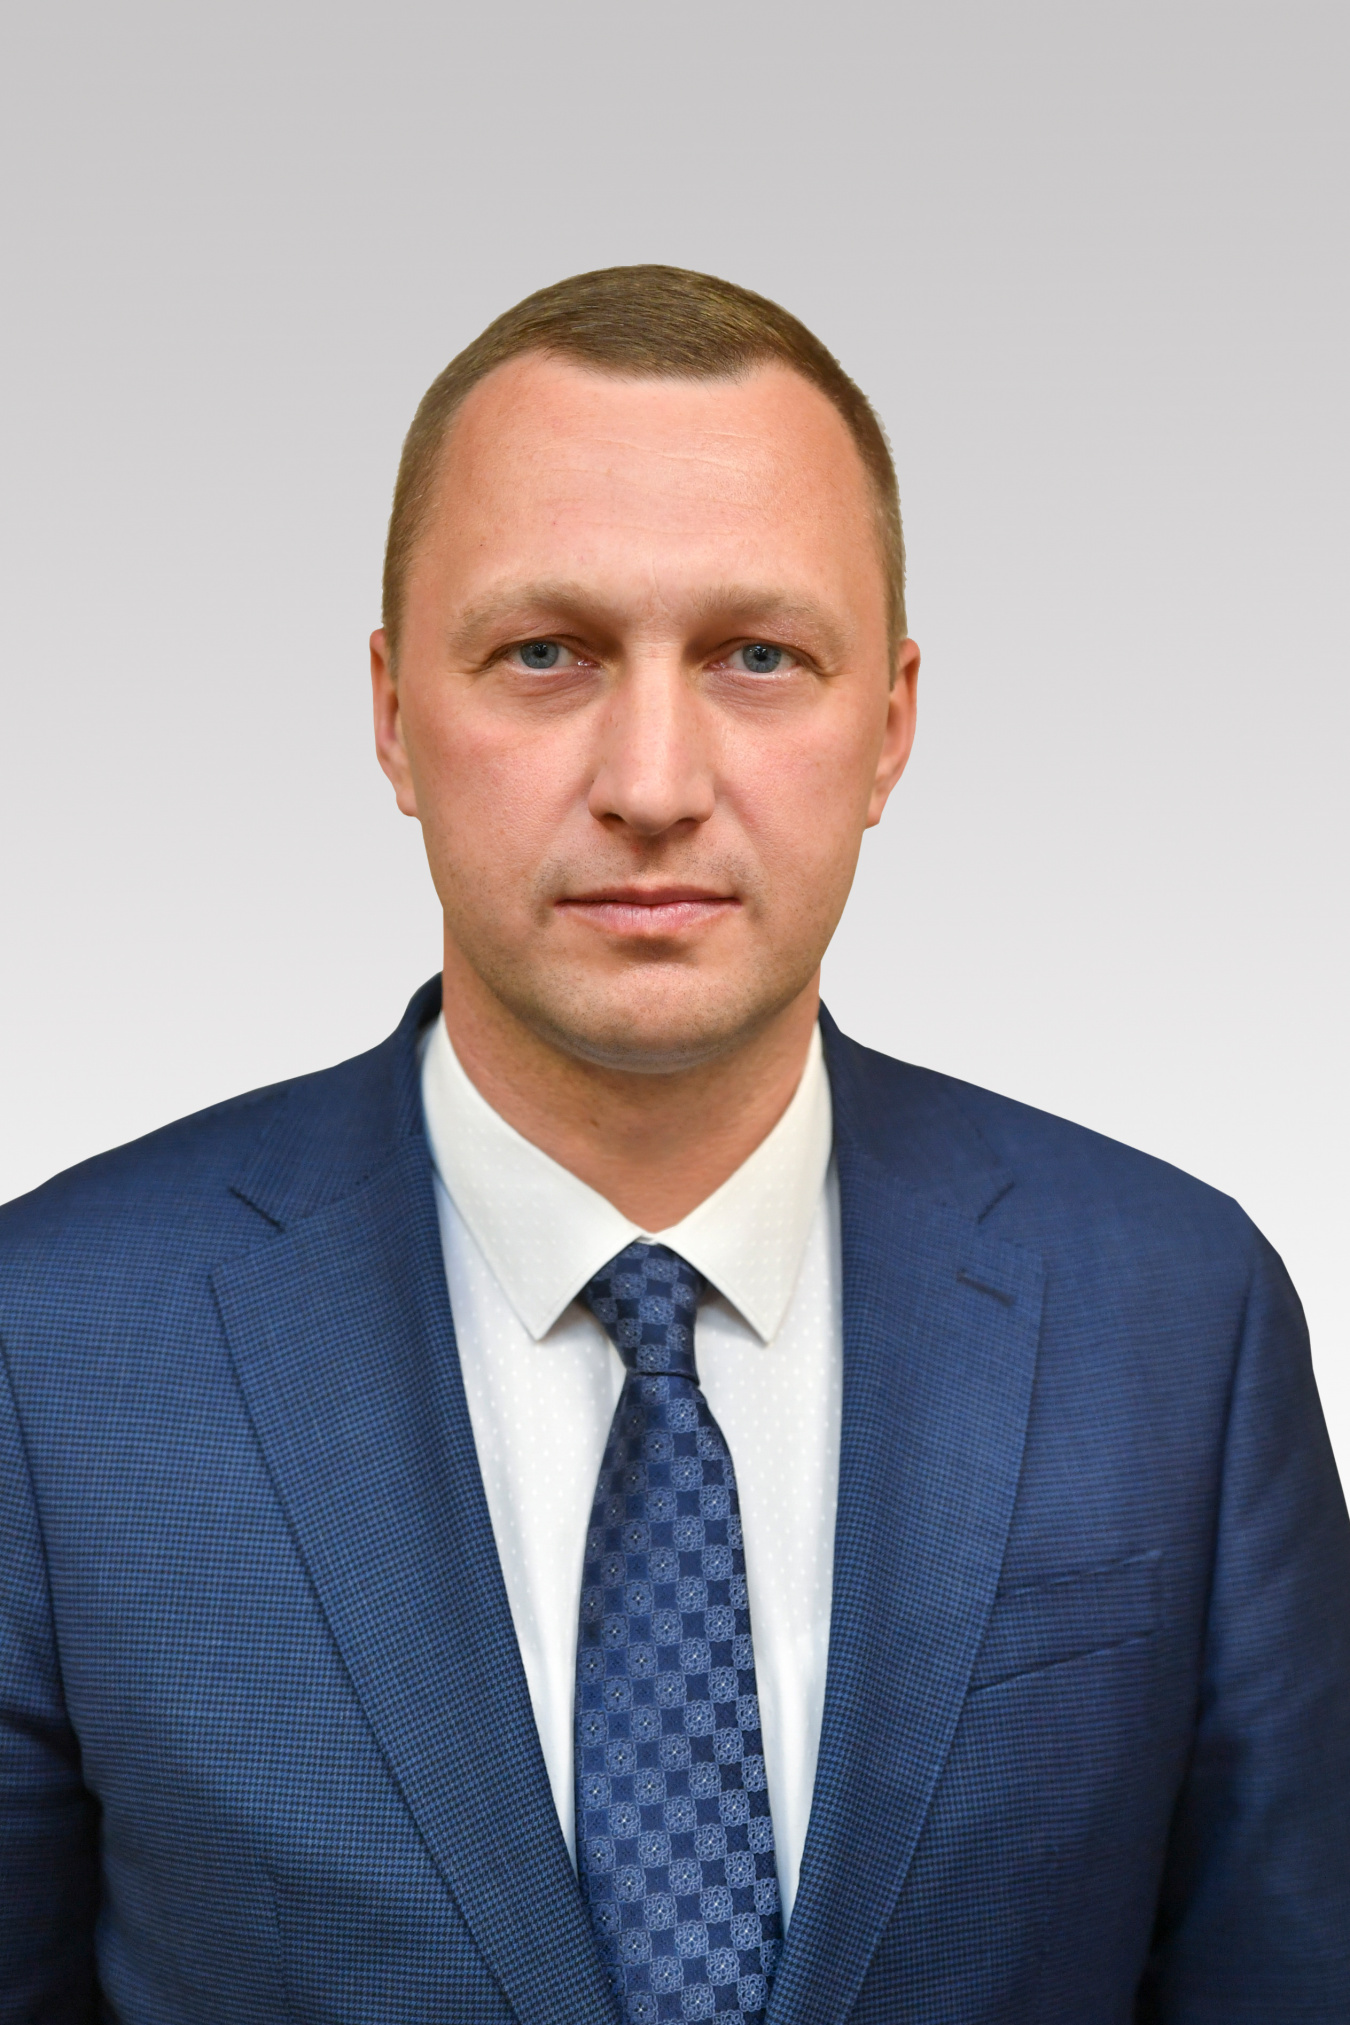 Роман Бусаргин назначен временно исполняющим обязанности губернатора Саратовской области